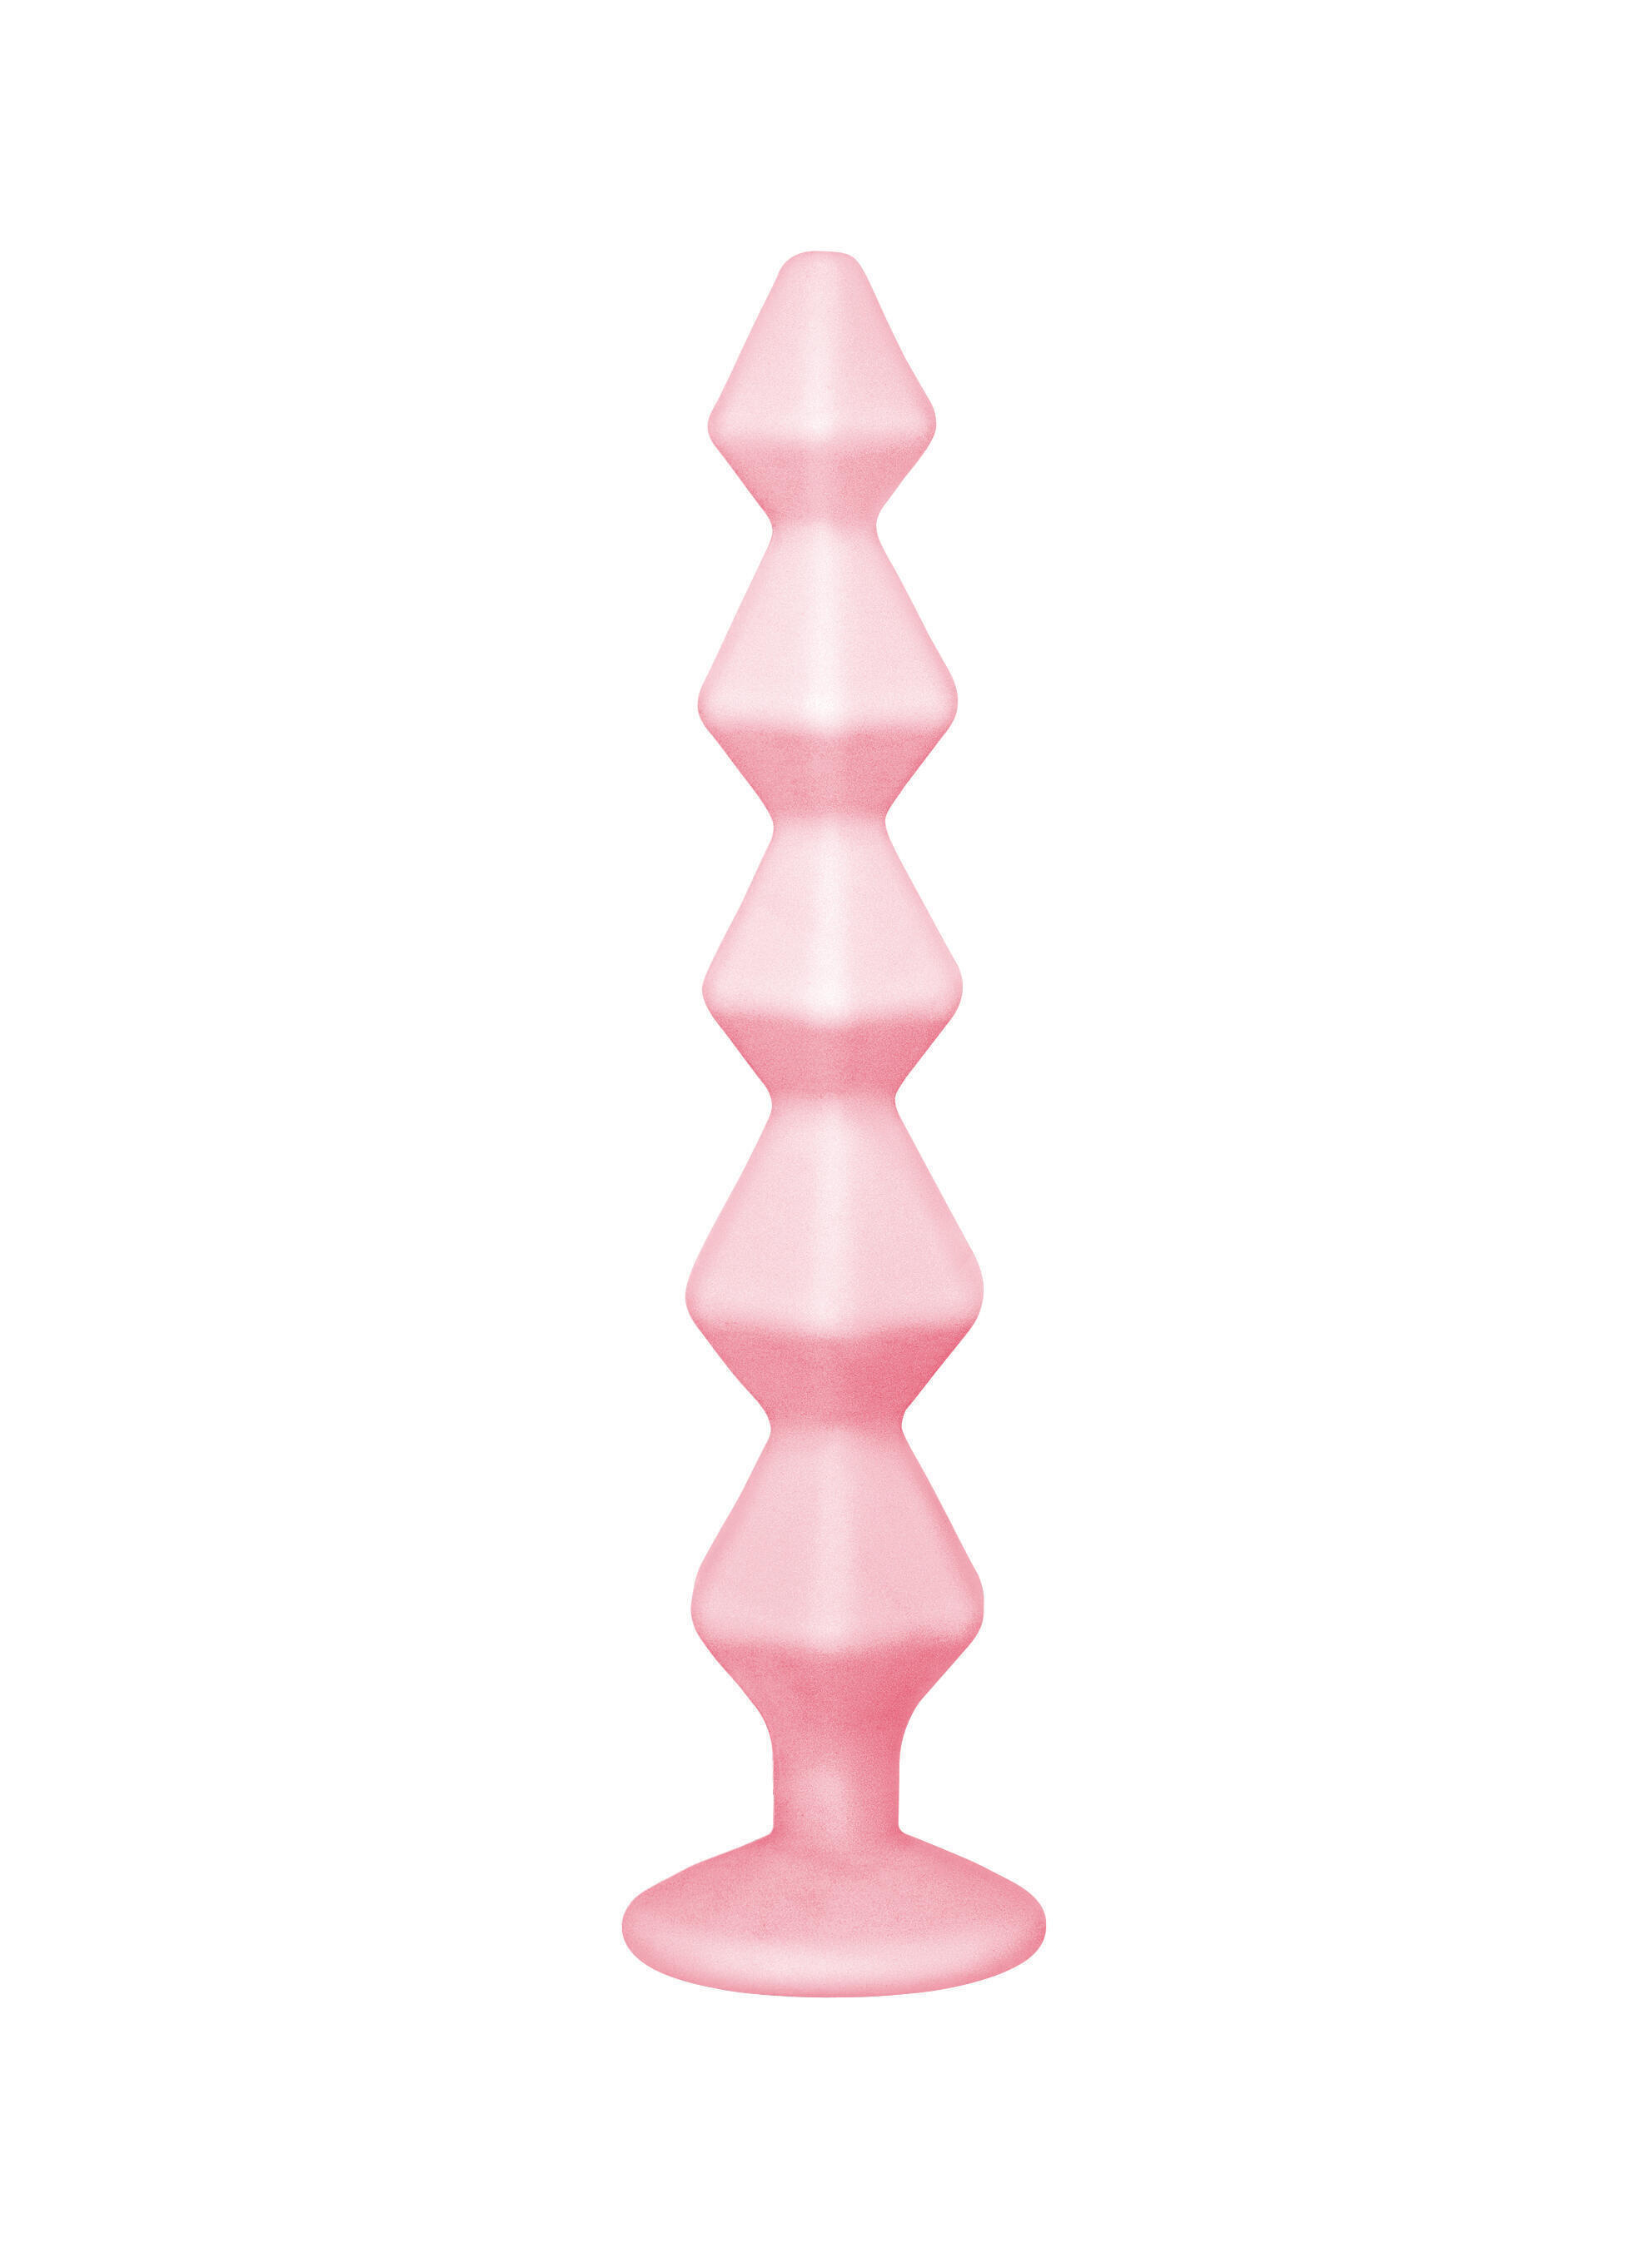 Анальная цепочка с кристаллом Lola Games Emotions Buddy, розовая с бесцветным кристаллом